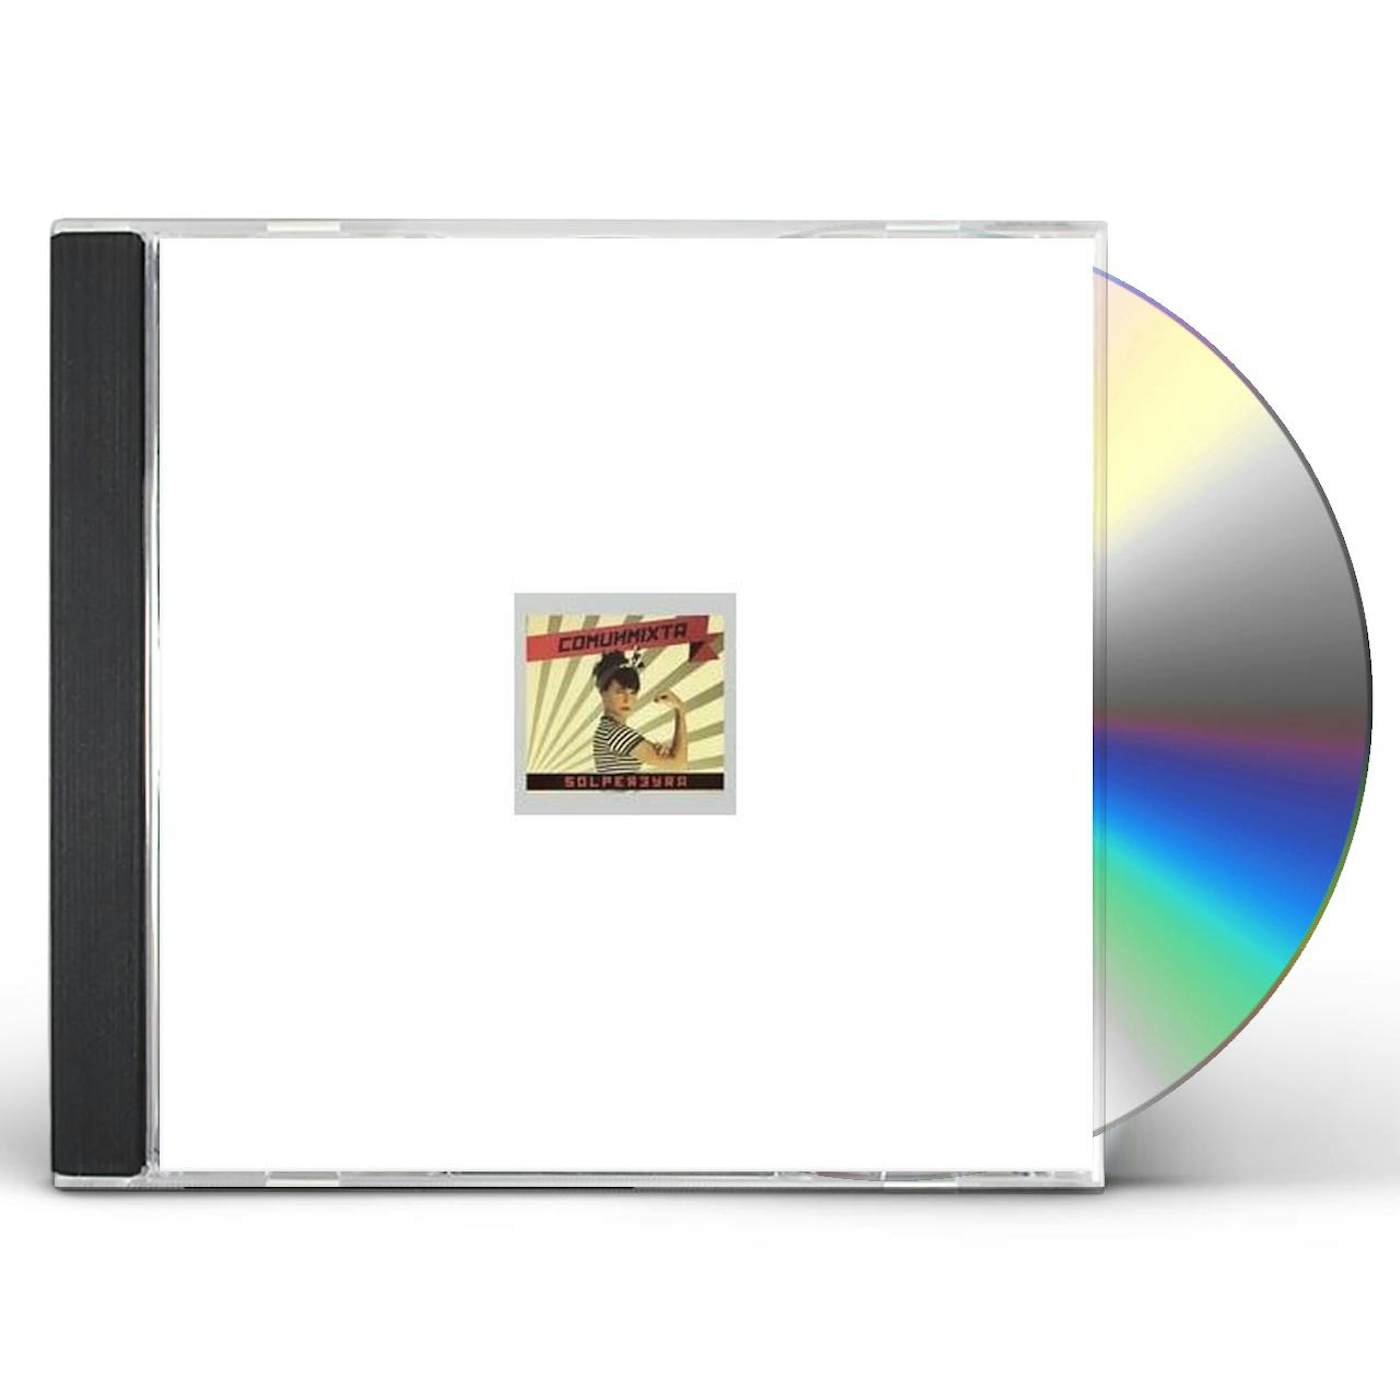 Sol Pereyra COMUNMIXTA CD